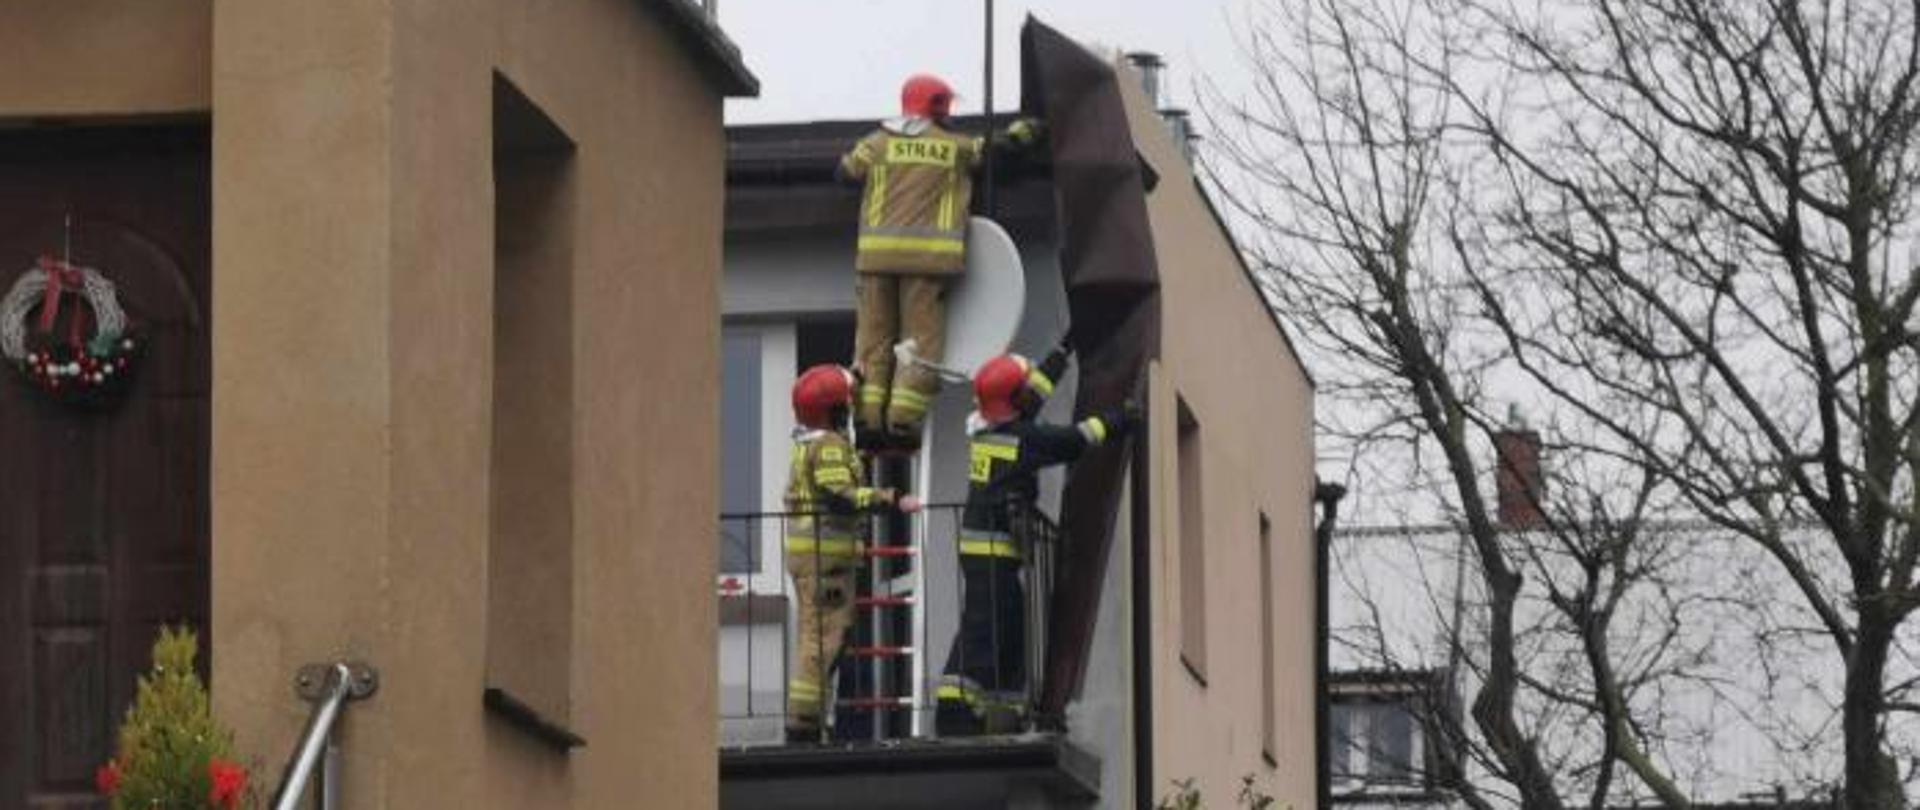 czterech strażaków na balkonie domu usuwa uszkodzone poszycie dachu